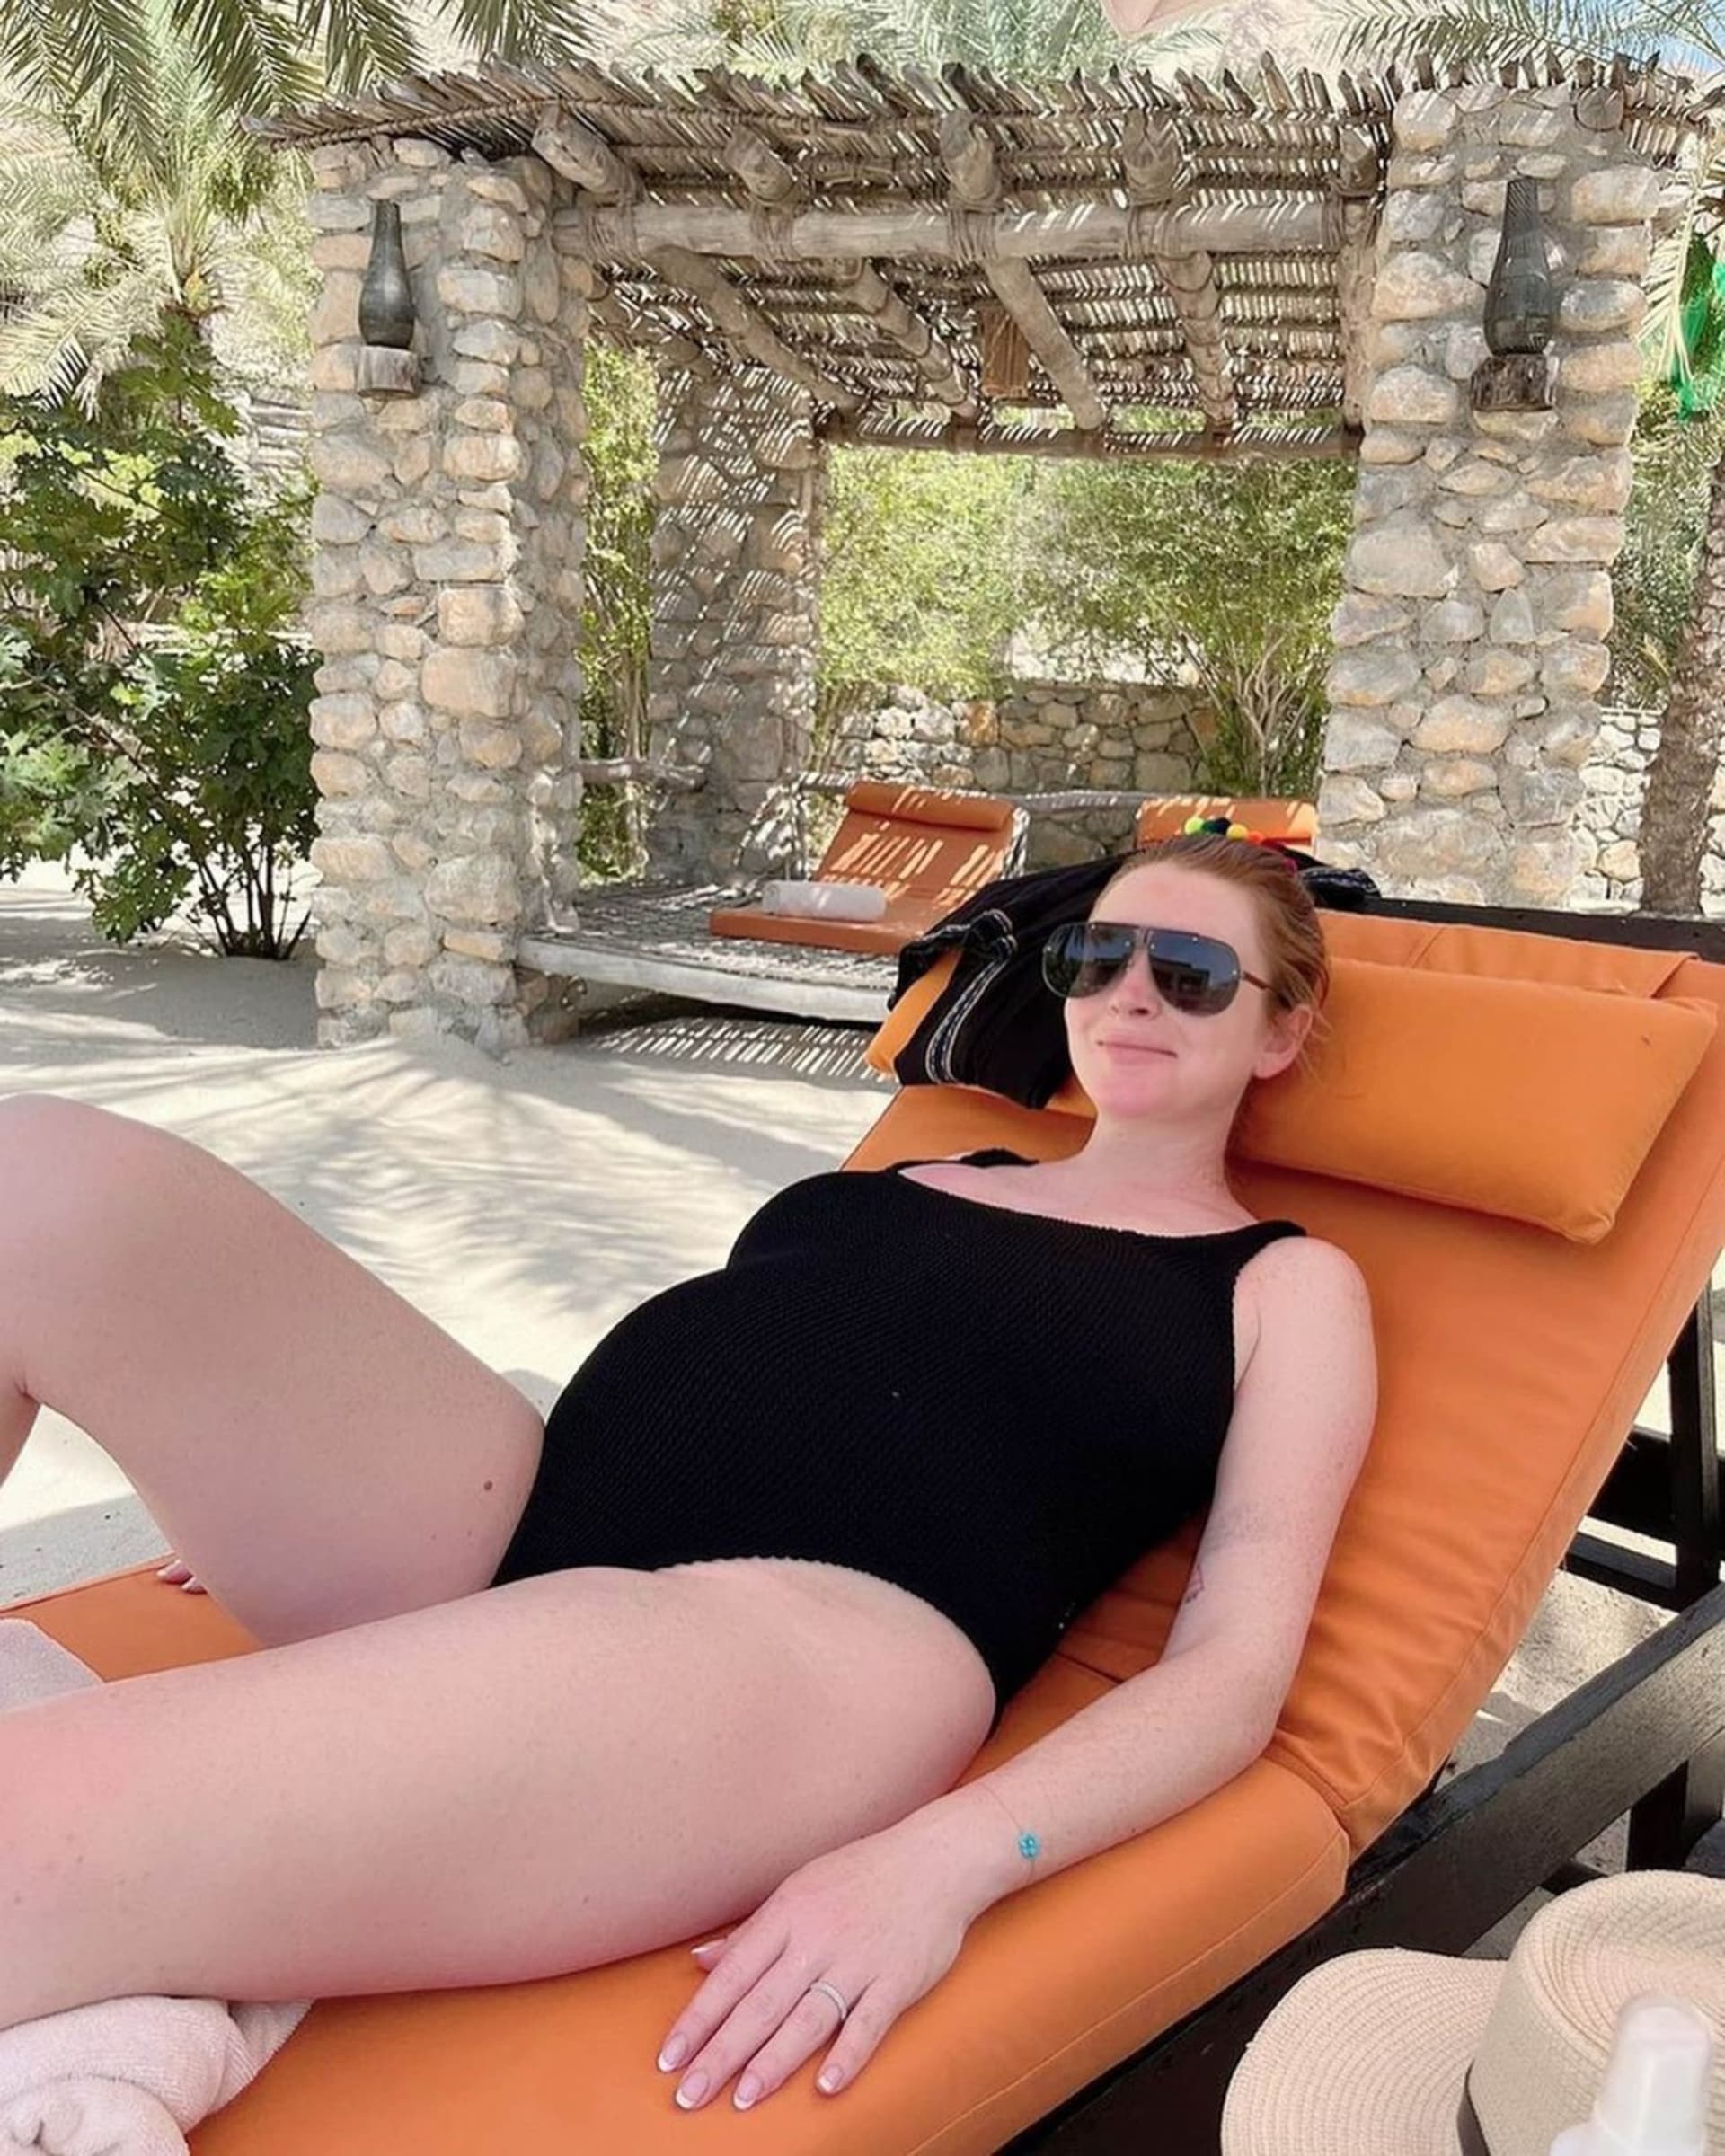 Herečka Lindsay Lohan je nyní těhotná a těší se na příchod potomka